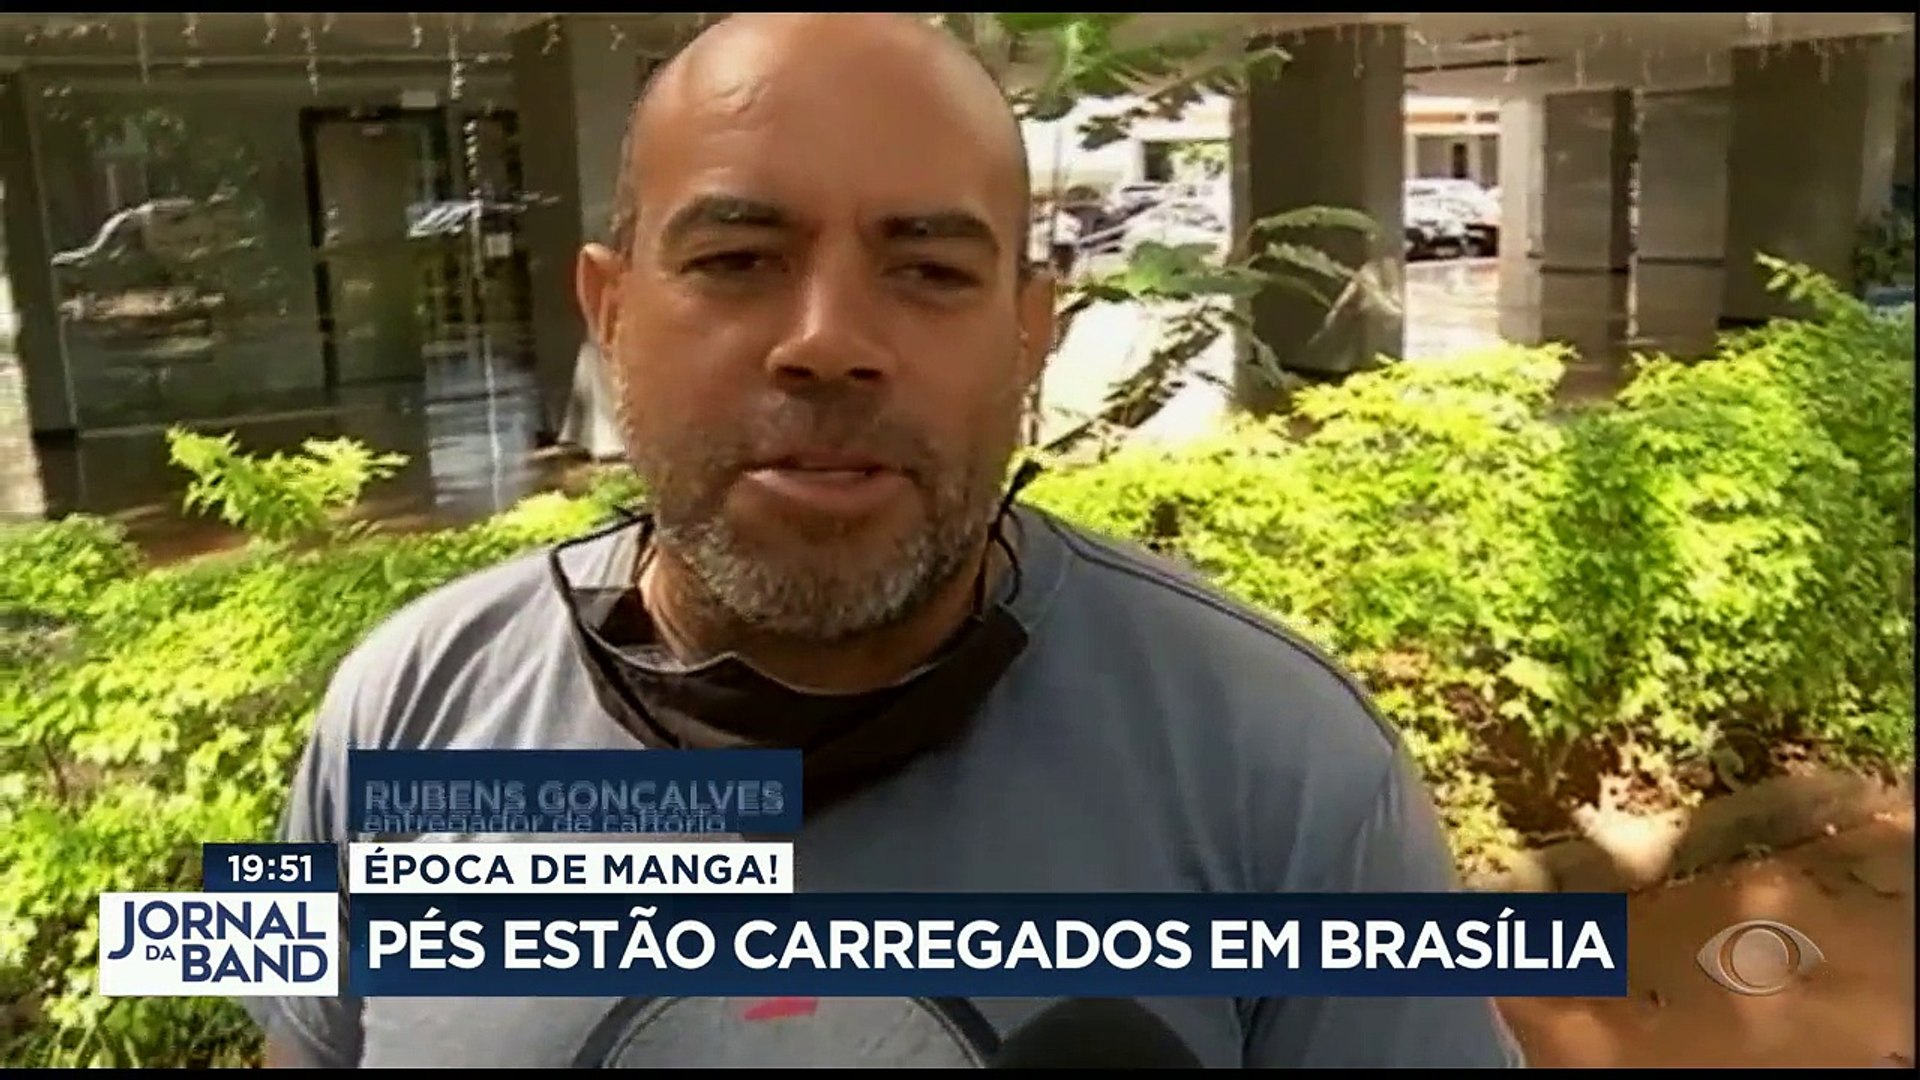 Nesta época do ano, Brasília se transforma: é manga pra todo lado. Quem  gosta da fruta aproveita! #BandJornalismo - Vídeo Dailymotion